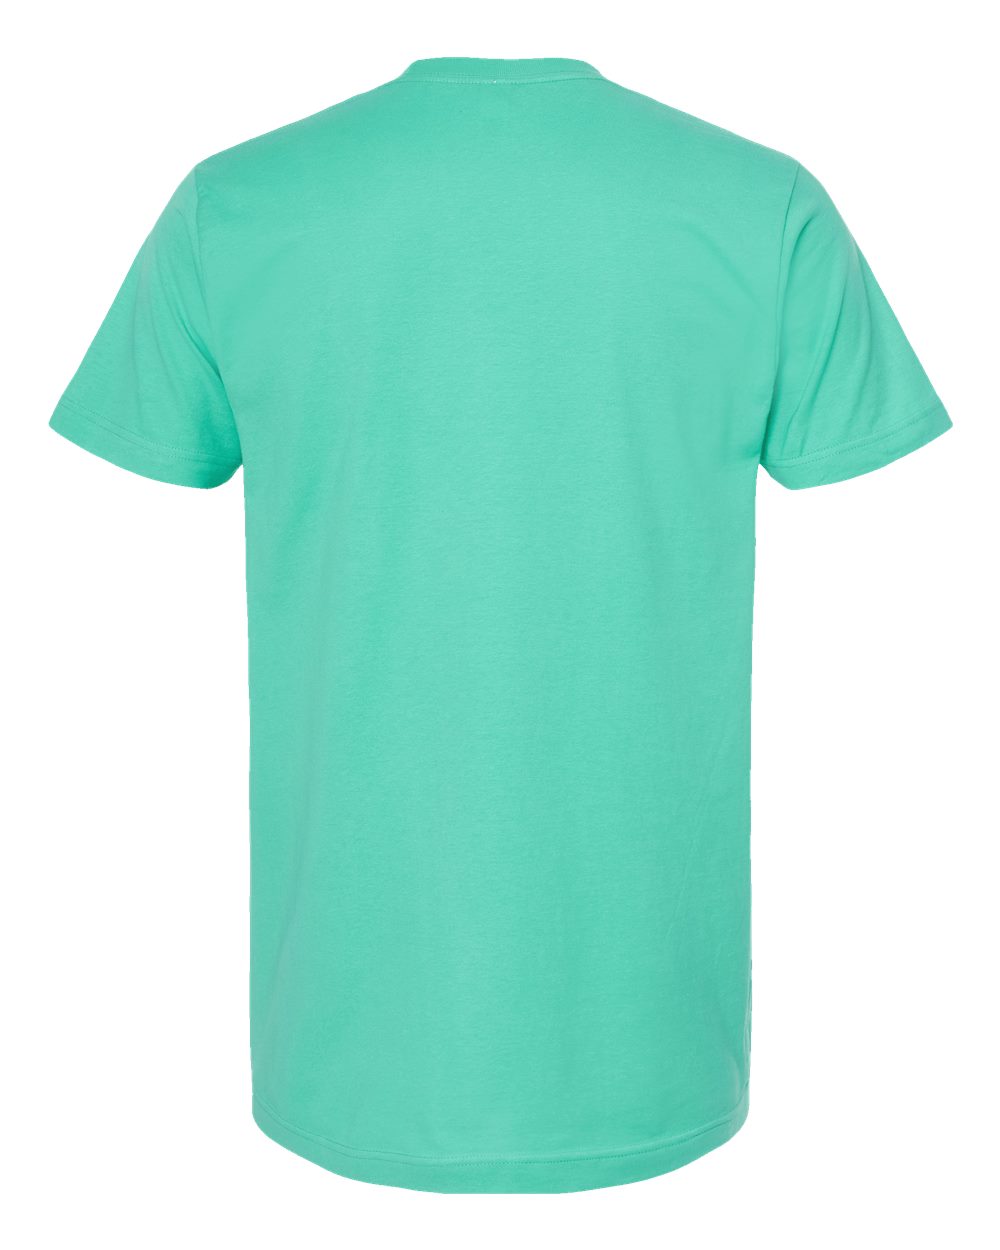 Tultex - Fine Jersey Mint Hawk Tauh T-Shirt - 202  SKU#TUL20210259S129